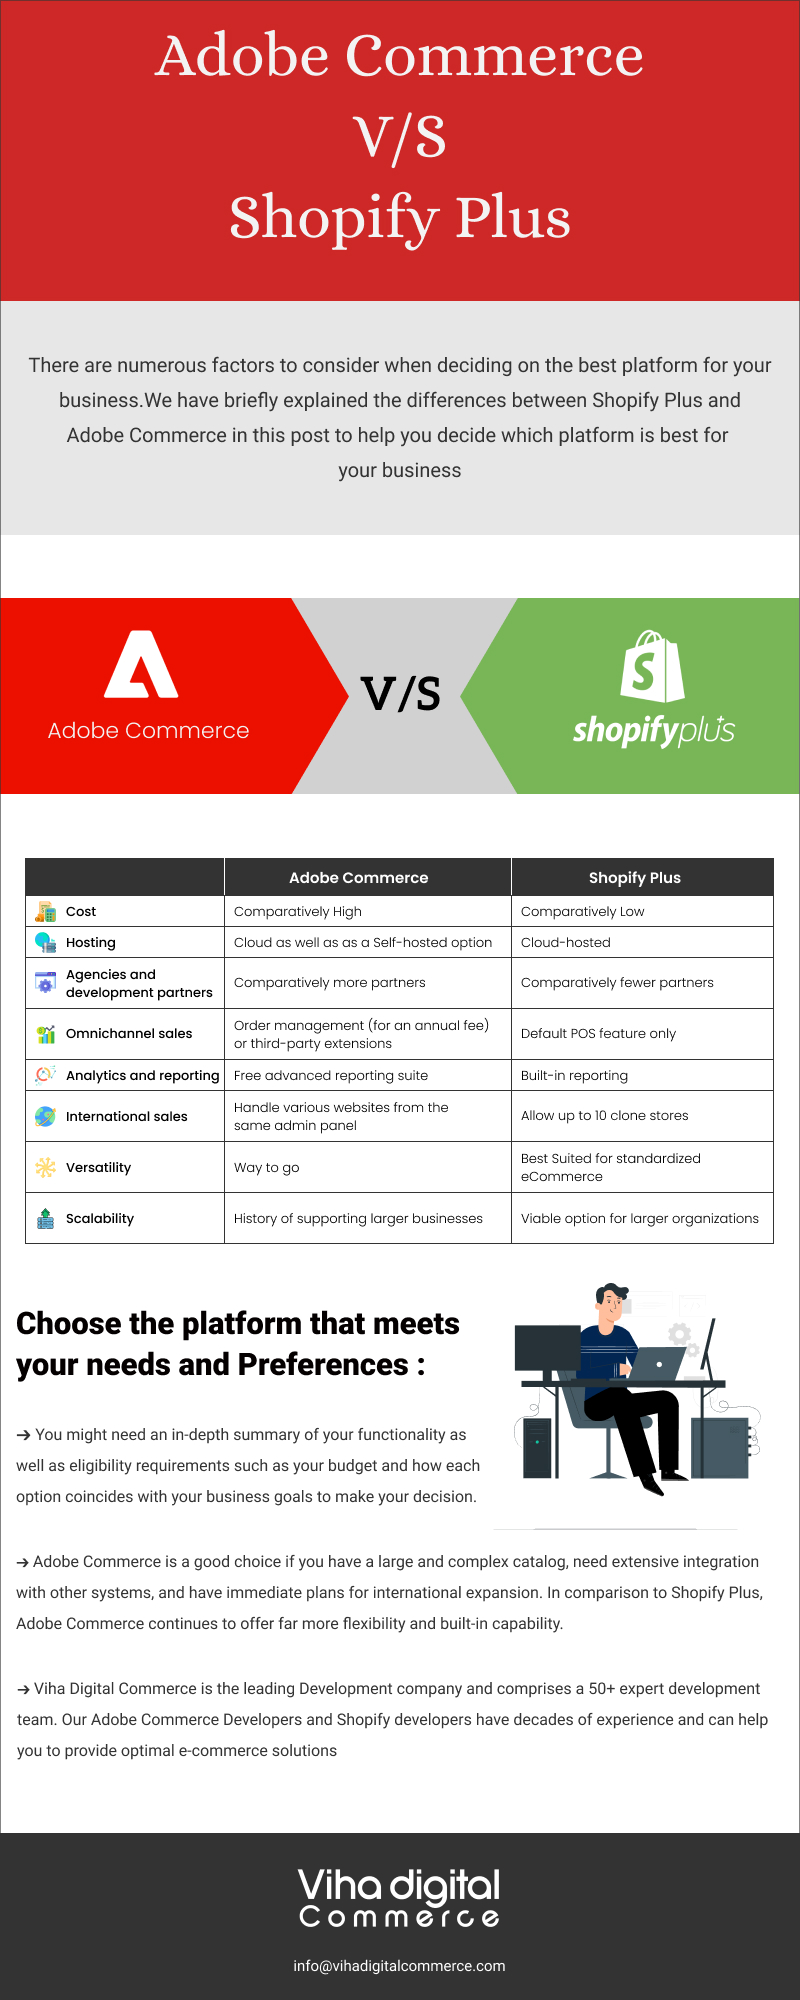 Adobe Commerce V/S Shopify Plus